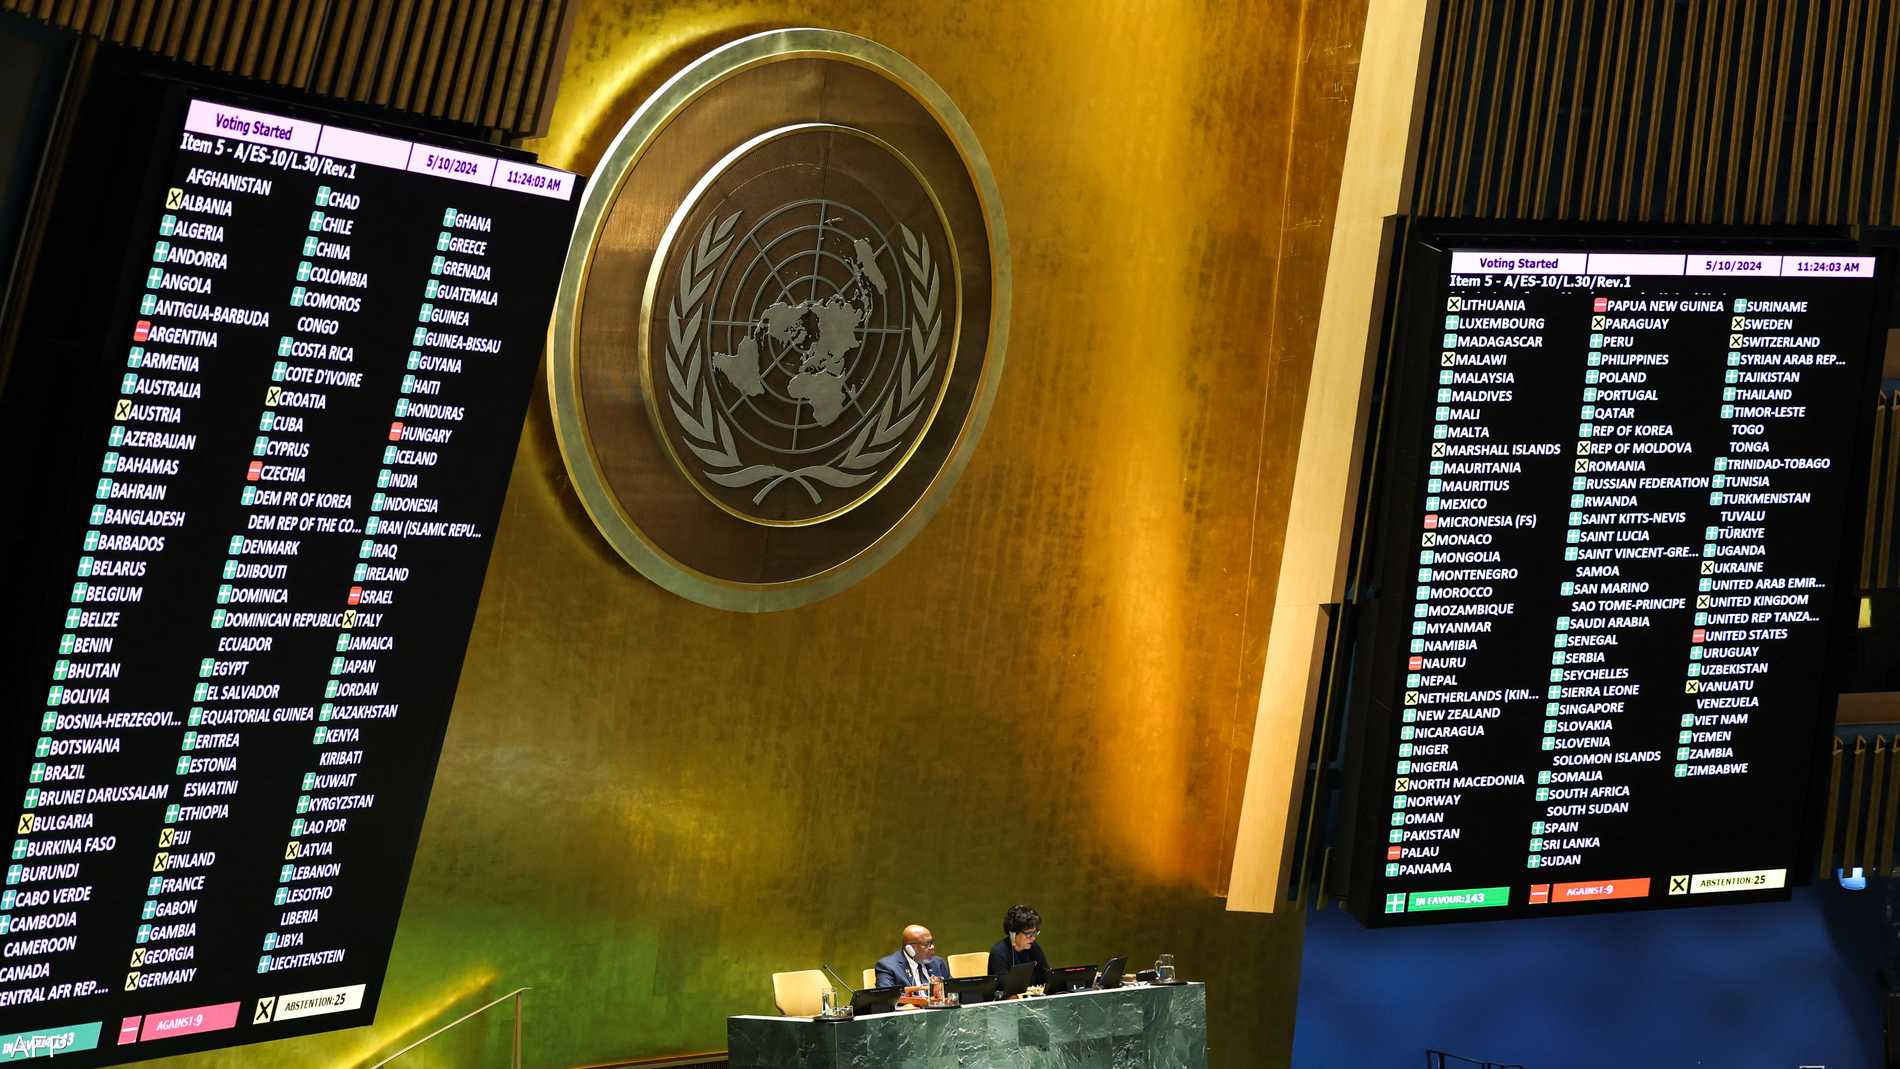 ما هي الدول الممتنعة والمعارضة لعضوية فلسطين بالأمم المتحدة؟ 